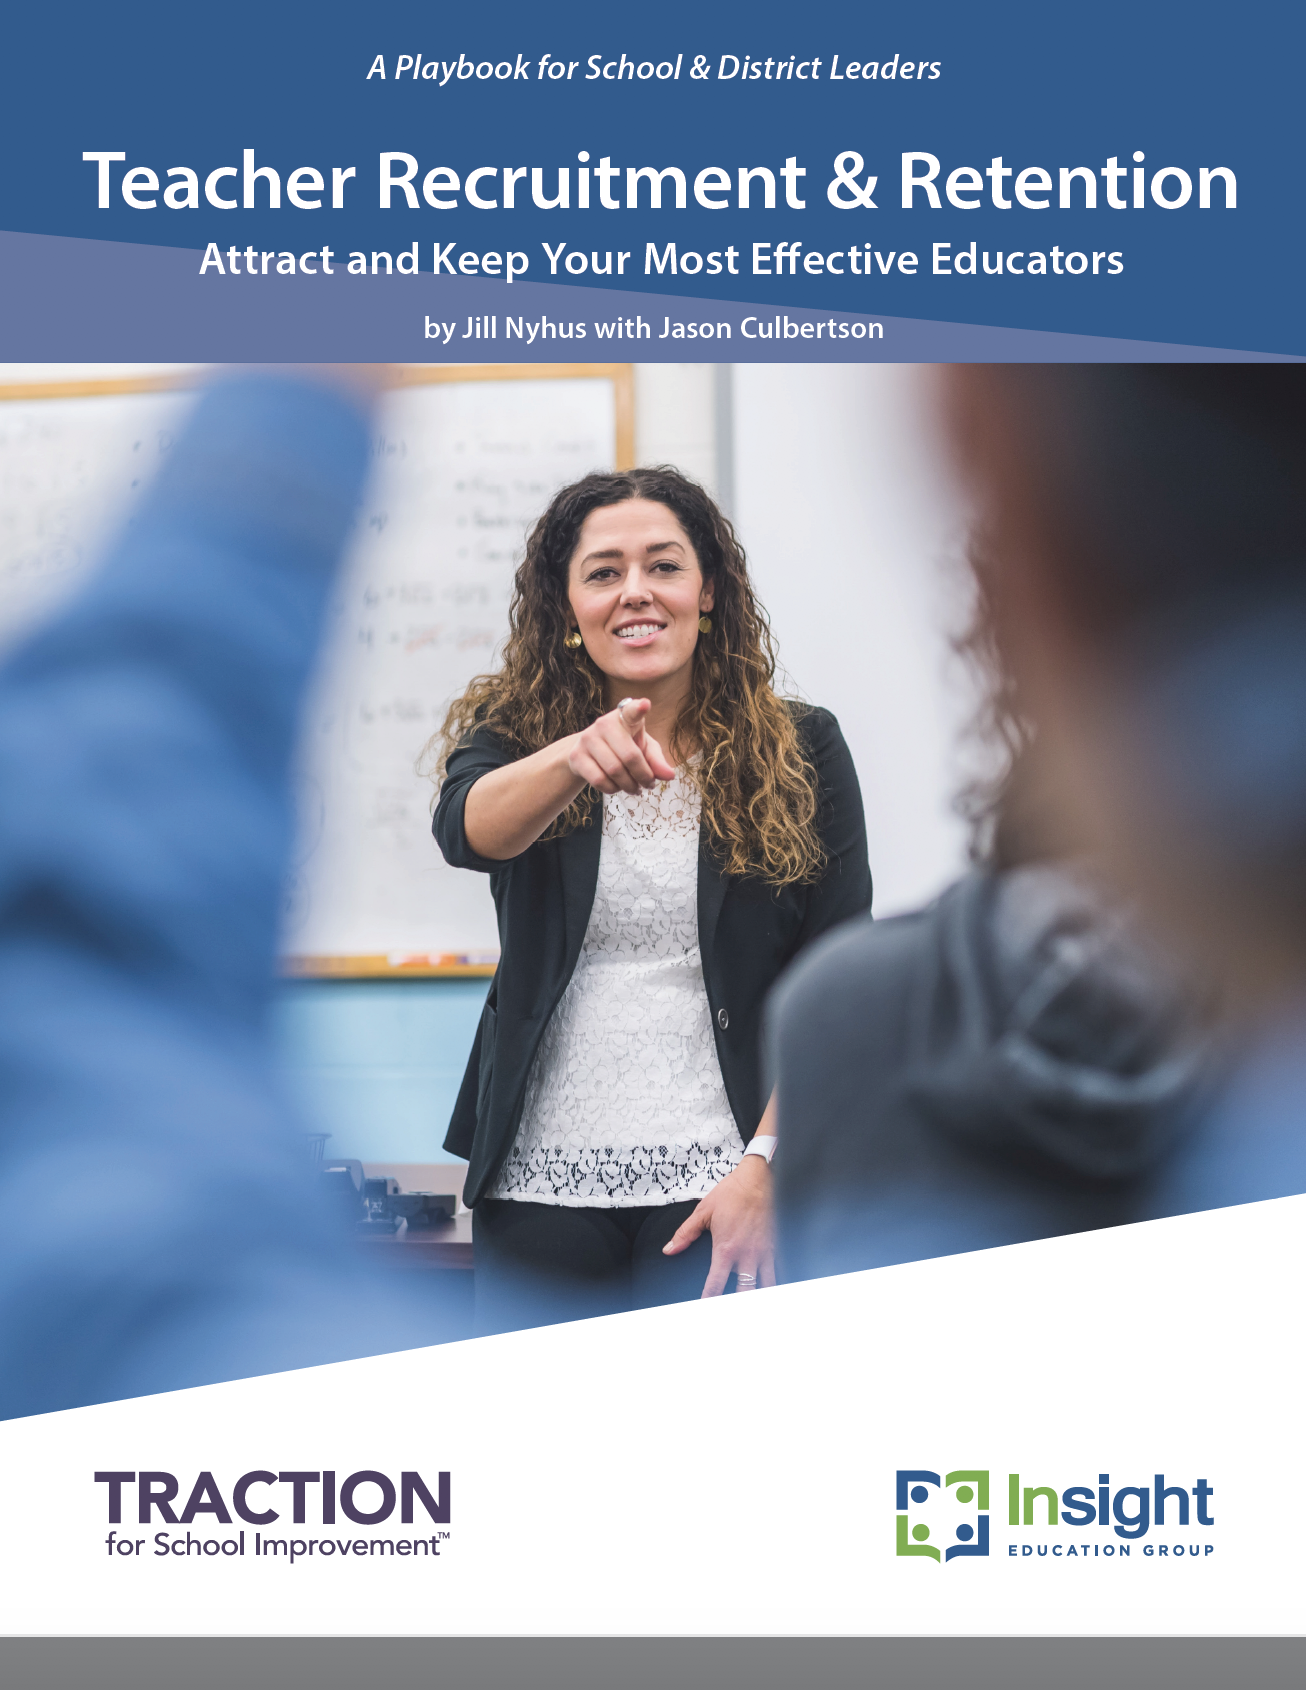 Teacher Recruitment & Retention Playbook